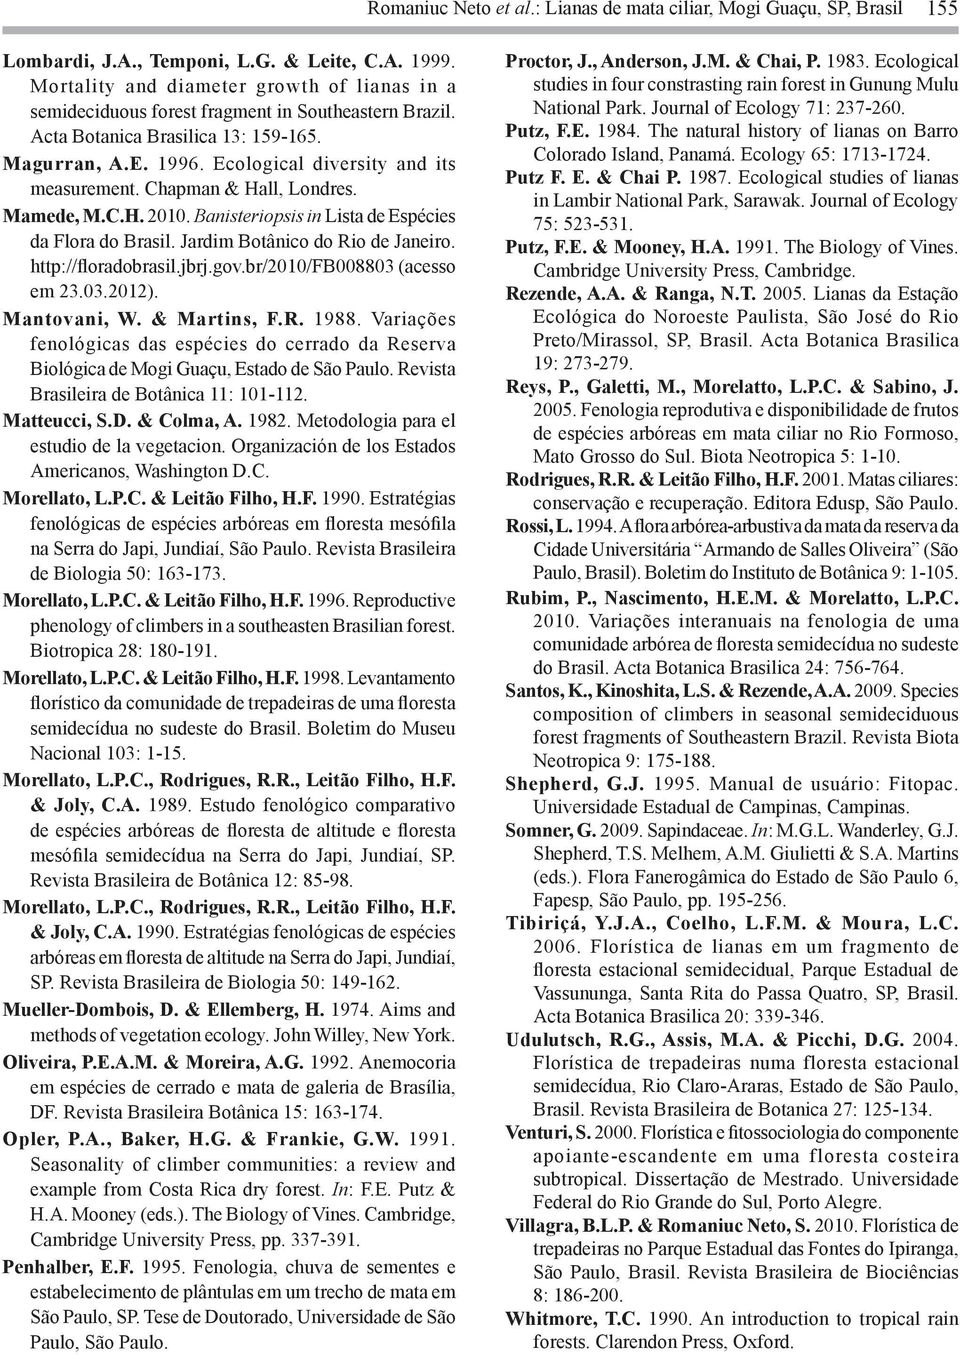 Chapman & Hall, Londres. Mamede, M.C.H. 2010. Banisteriopsis in Lista de Espécies da Flora do Brasil. Jardim Botânico do Rio de Janeiro. http://floradobrasil.jbrj.gov.br/2010/fb008803 (acesso em 23.